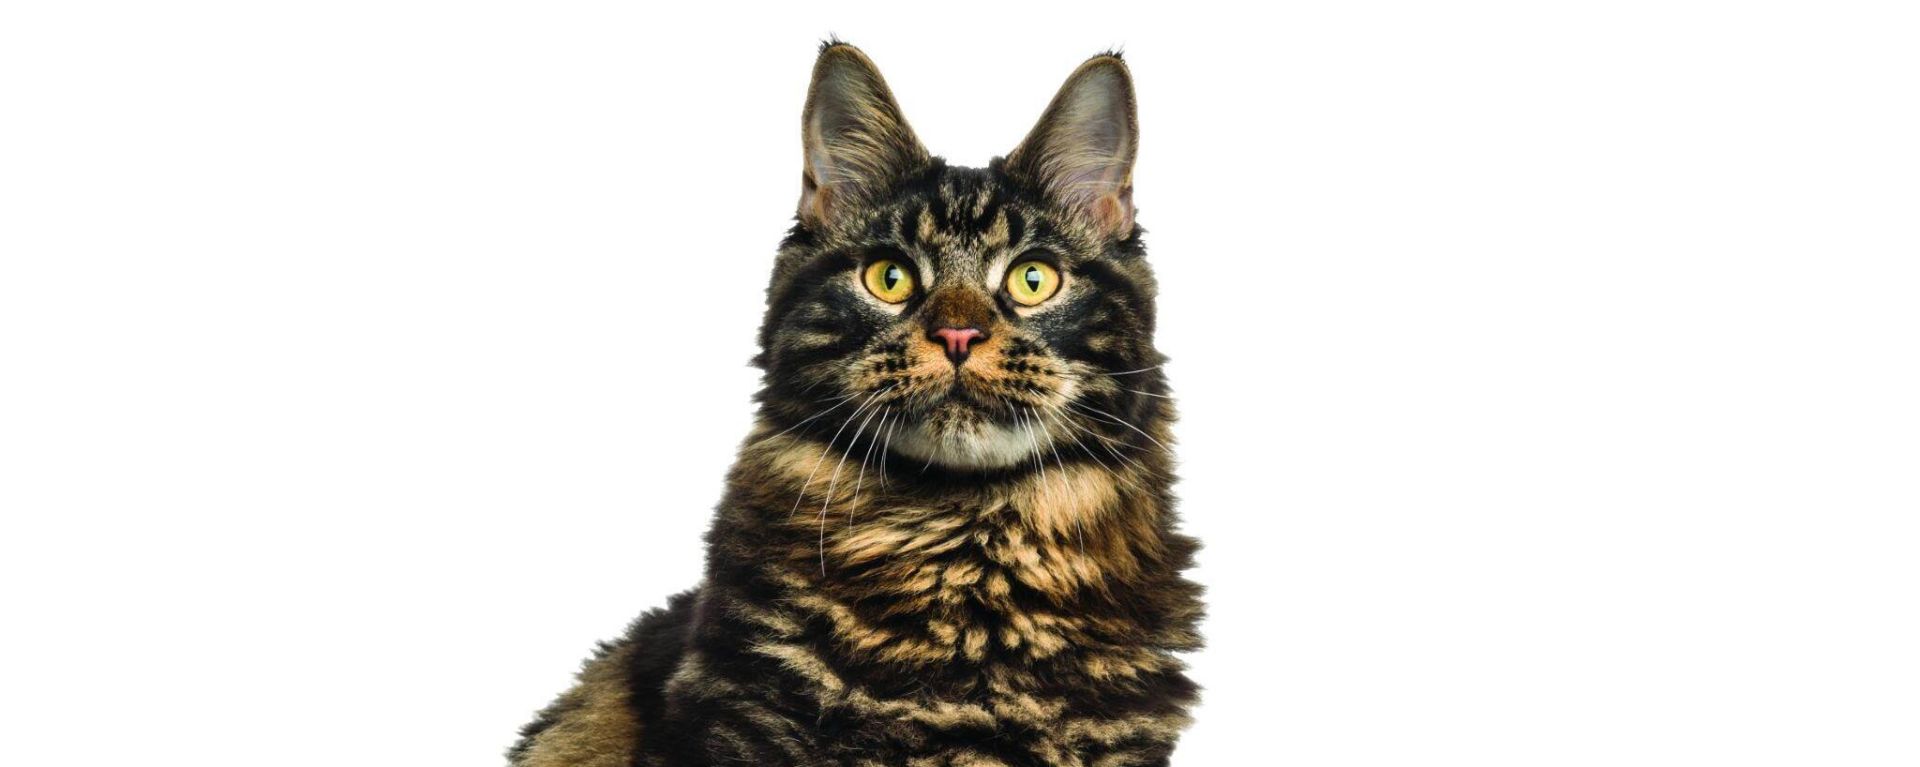 Мейн-кун: описание породы, характер кошки, чем кормить, сколько живут